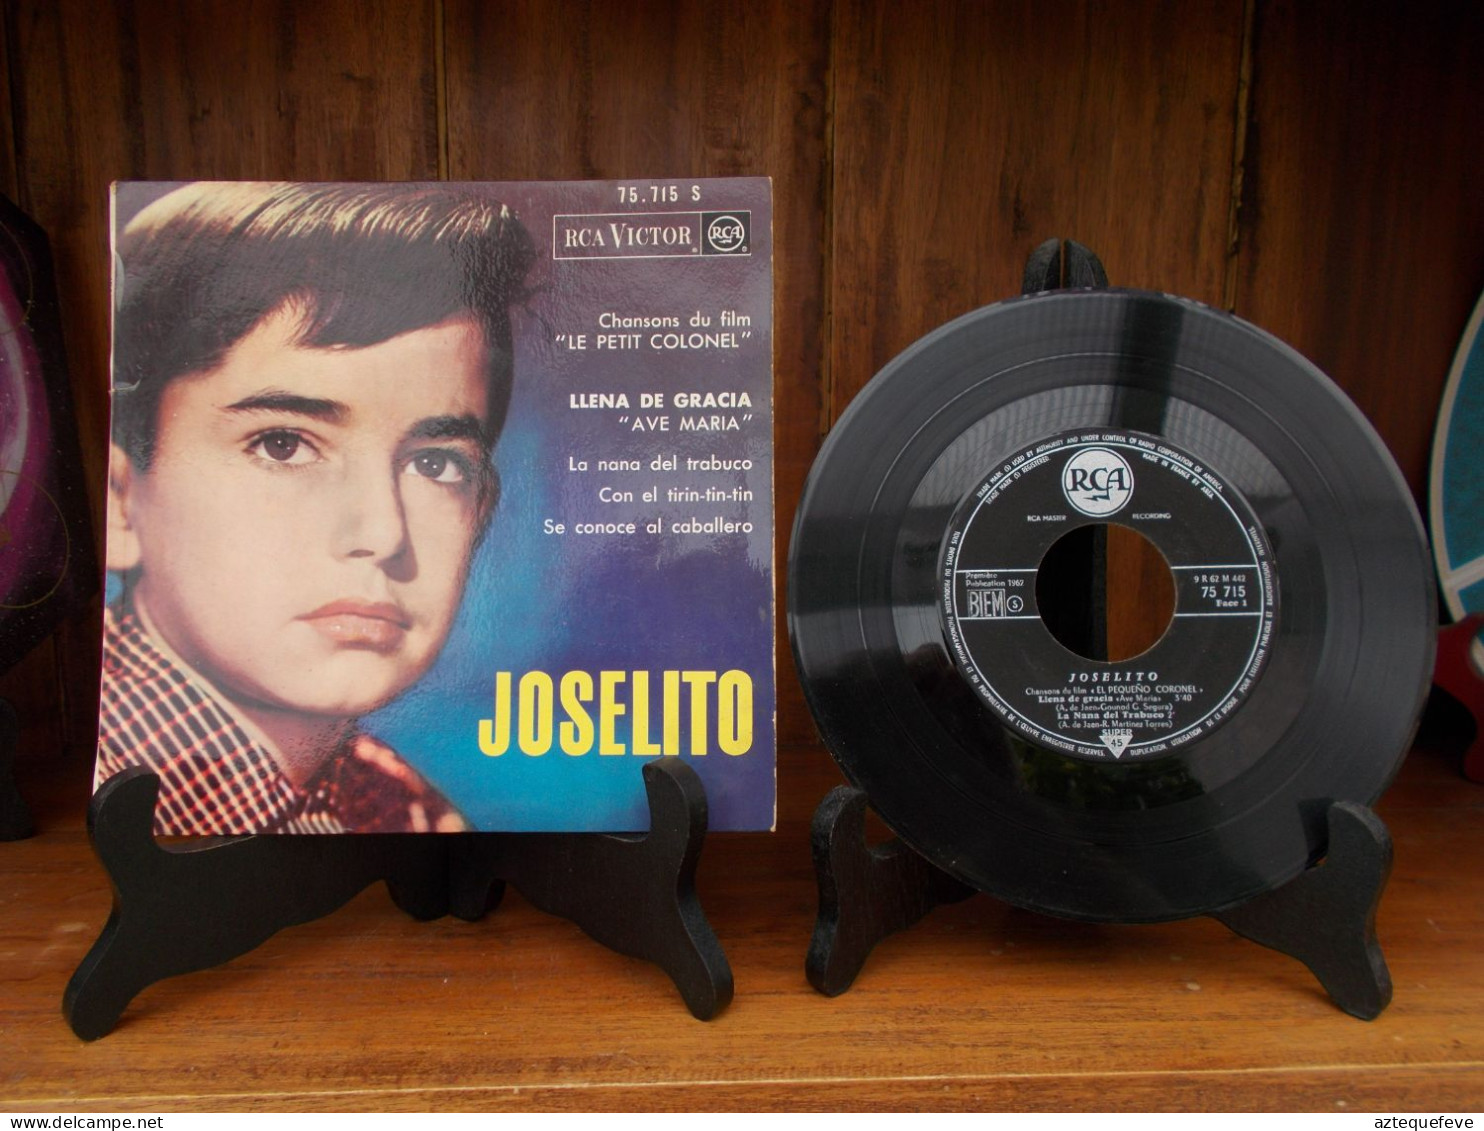 JOSELITO RCA VICTOR "LE PETIT COLONEL" Etc.. 45 T 75.715 S - Speciale Formaten